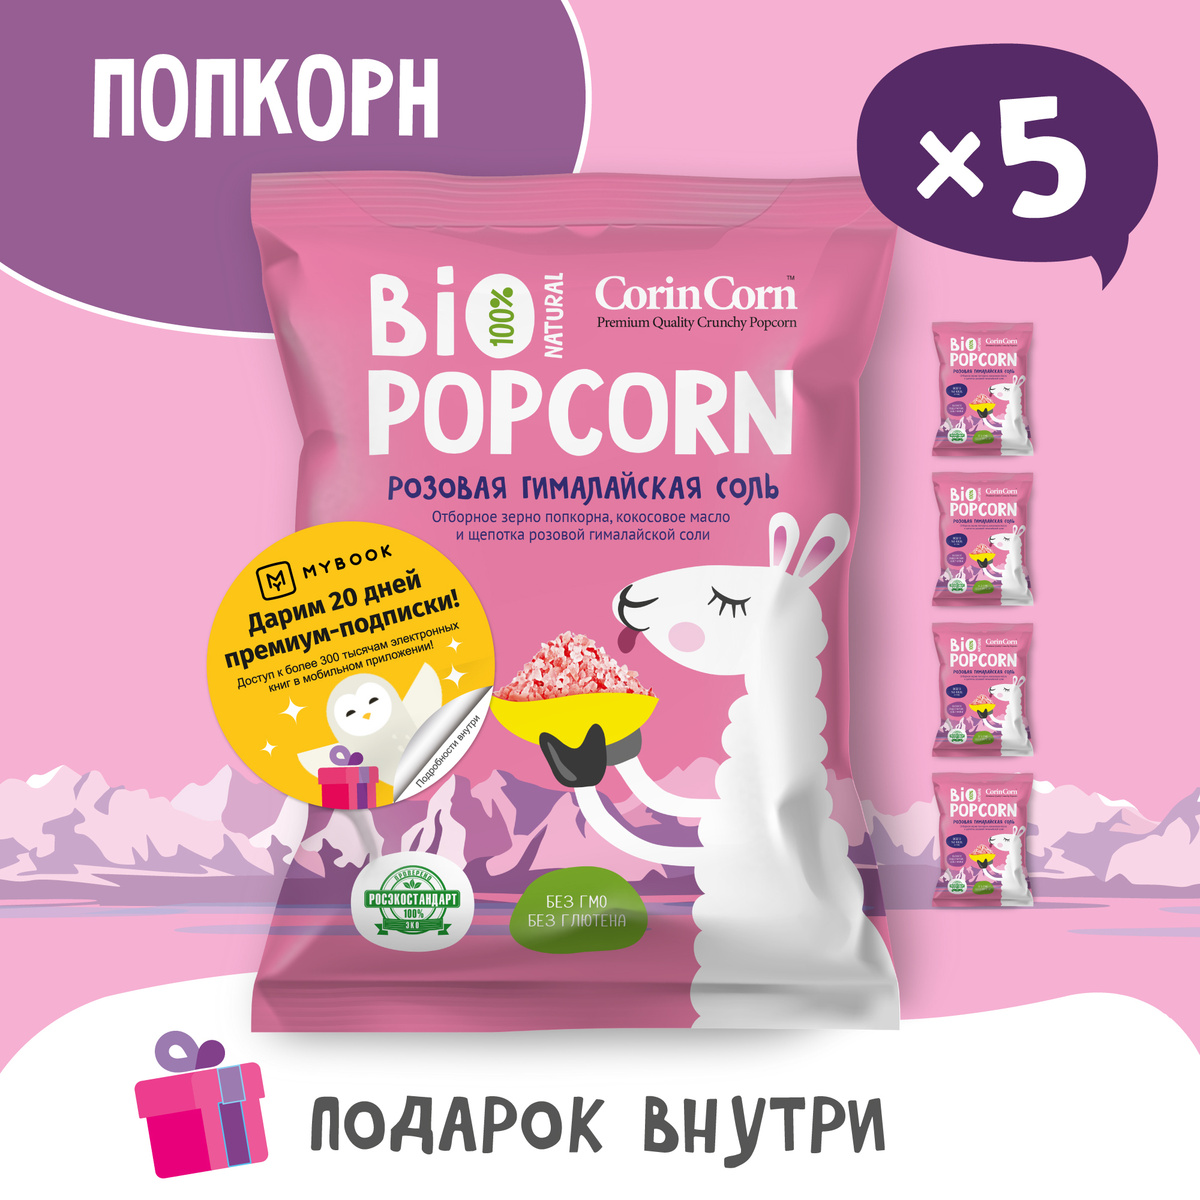 Попкорн готовый Bio POPCORN CorinCorn соленый розовая гималайская соль 30г х 5 пачек  #1